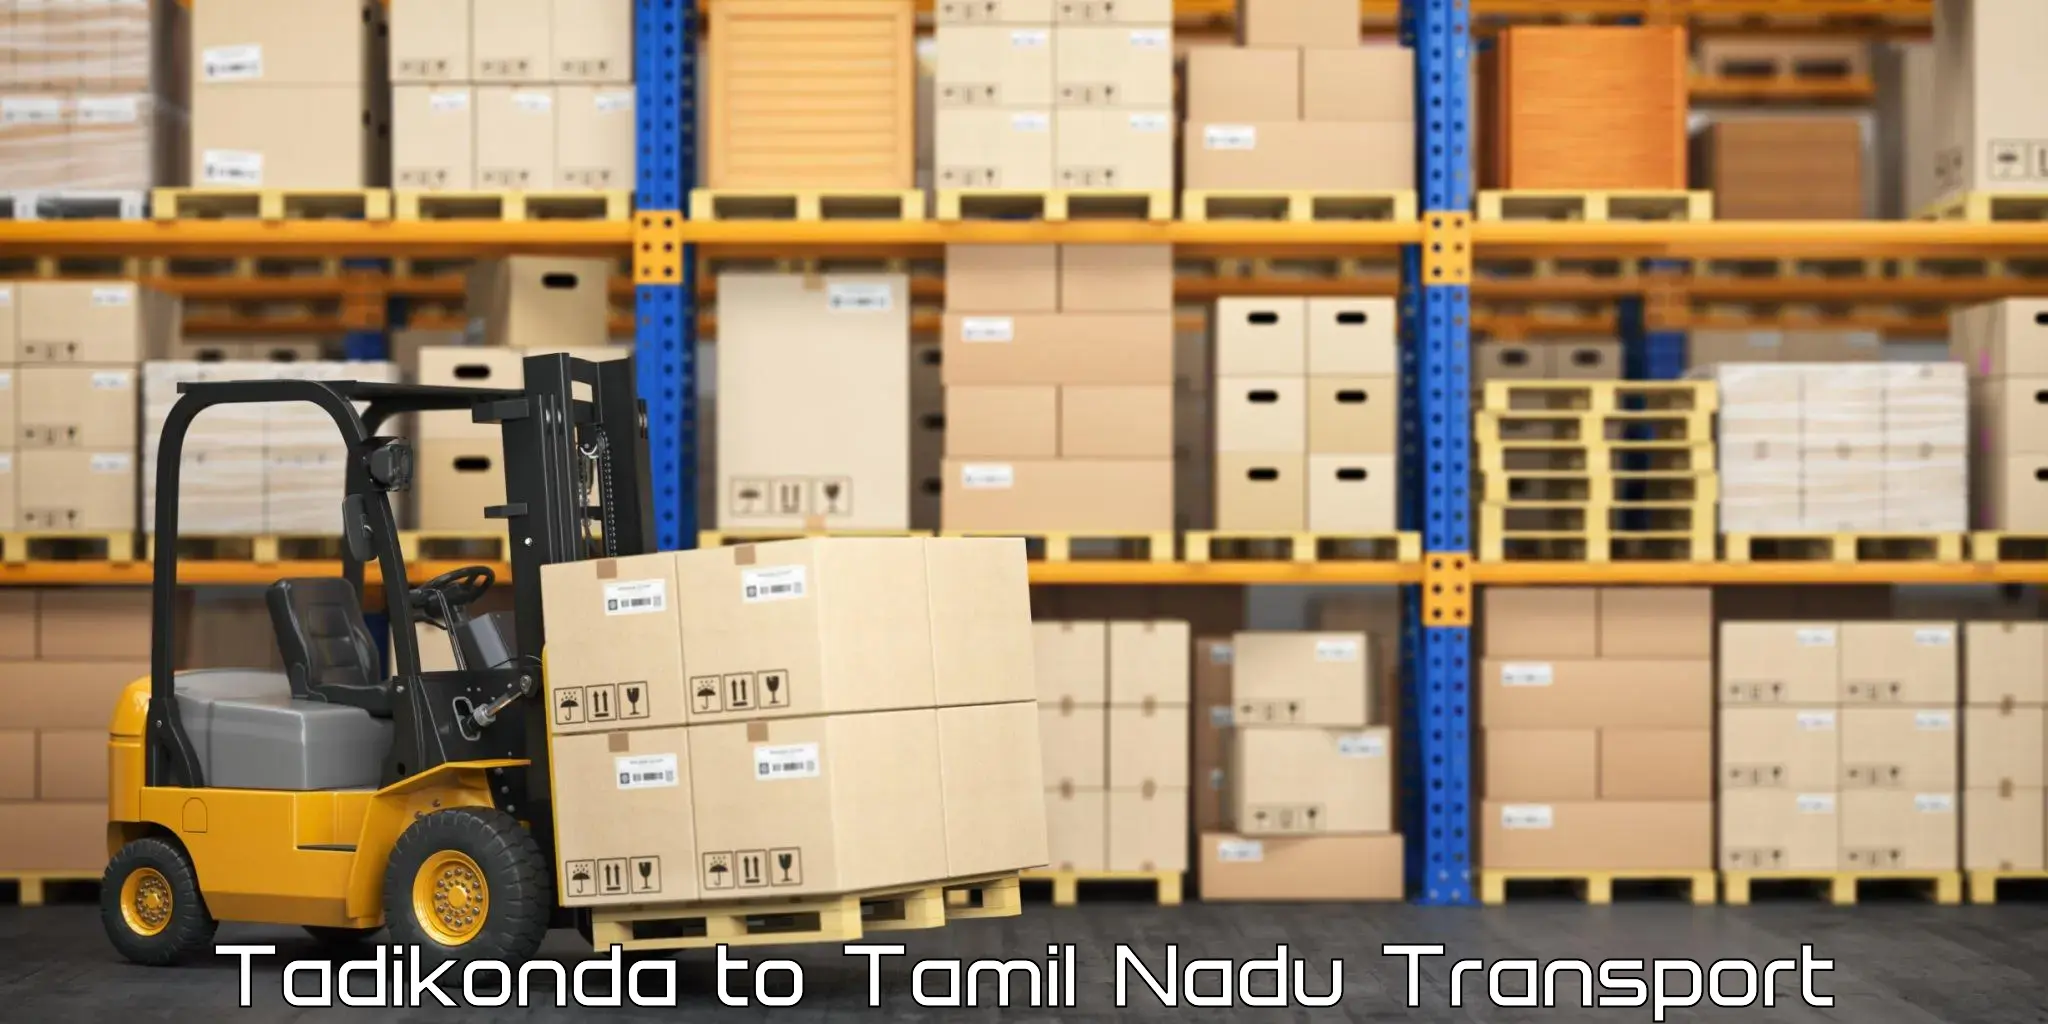 Container transportation services Tadikonda to The Gandhigram Rural Institute